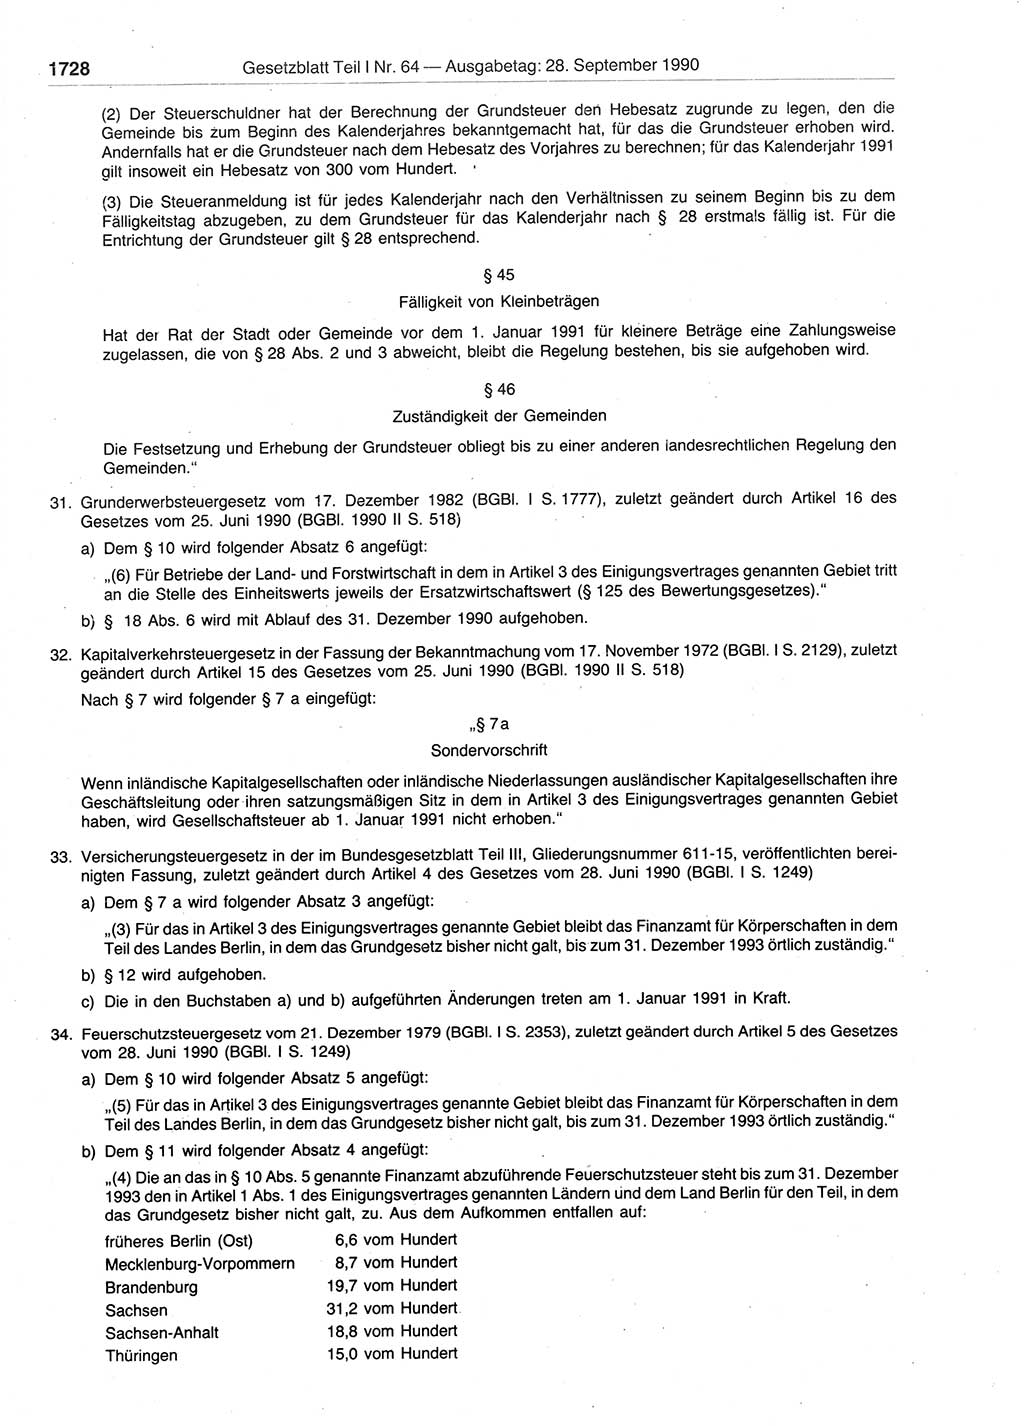 Gesetzblatt (GBl.) der Deutschen Demokratischen Republik (DDR) Teil Ⅰ 1990, Seite 1728 (GBl. DDR Ⅰ 1990, S. 1728)